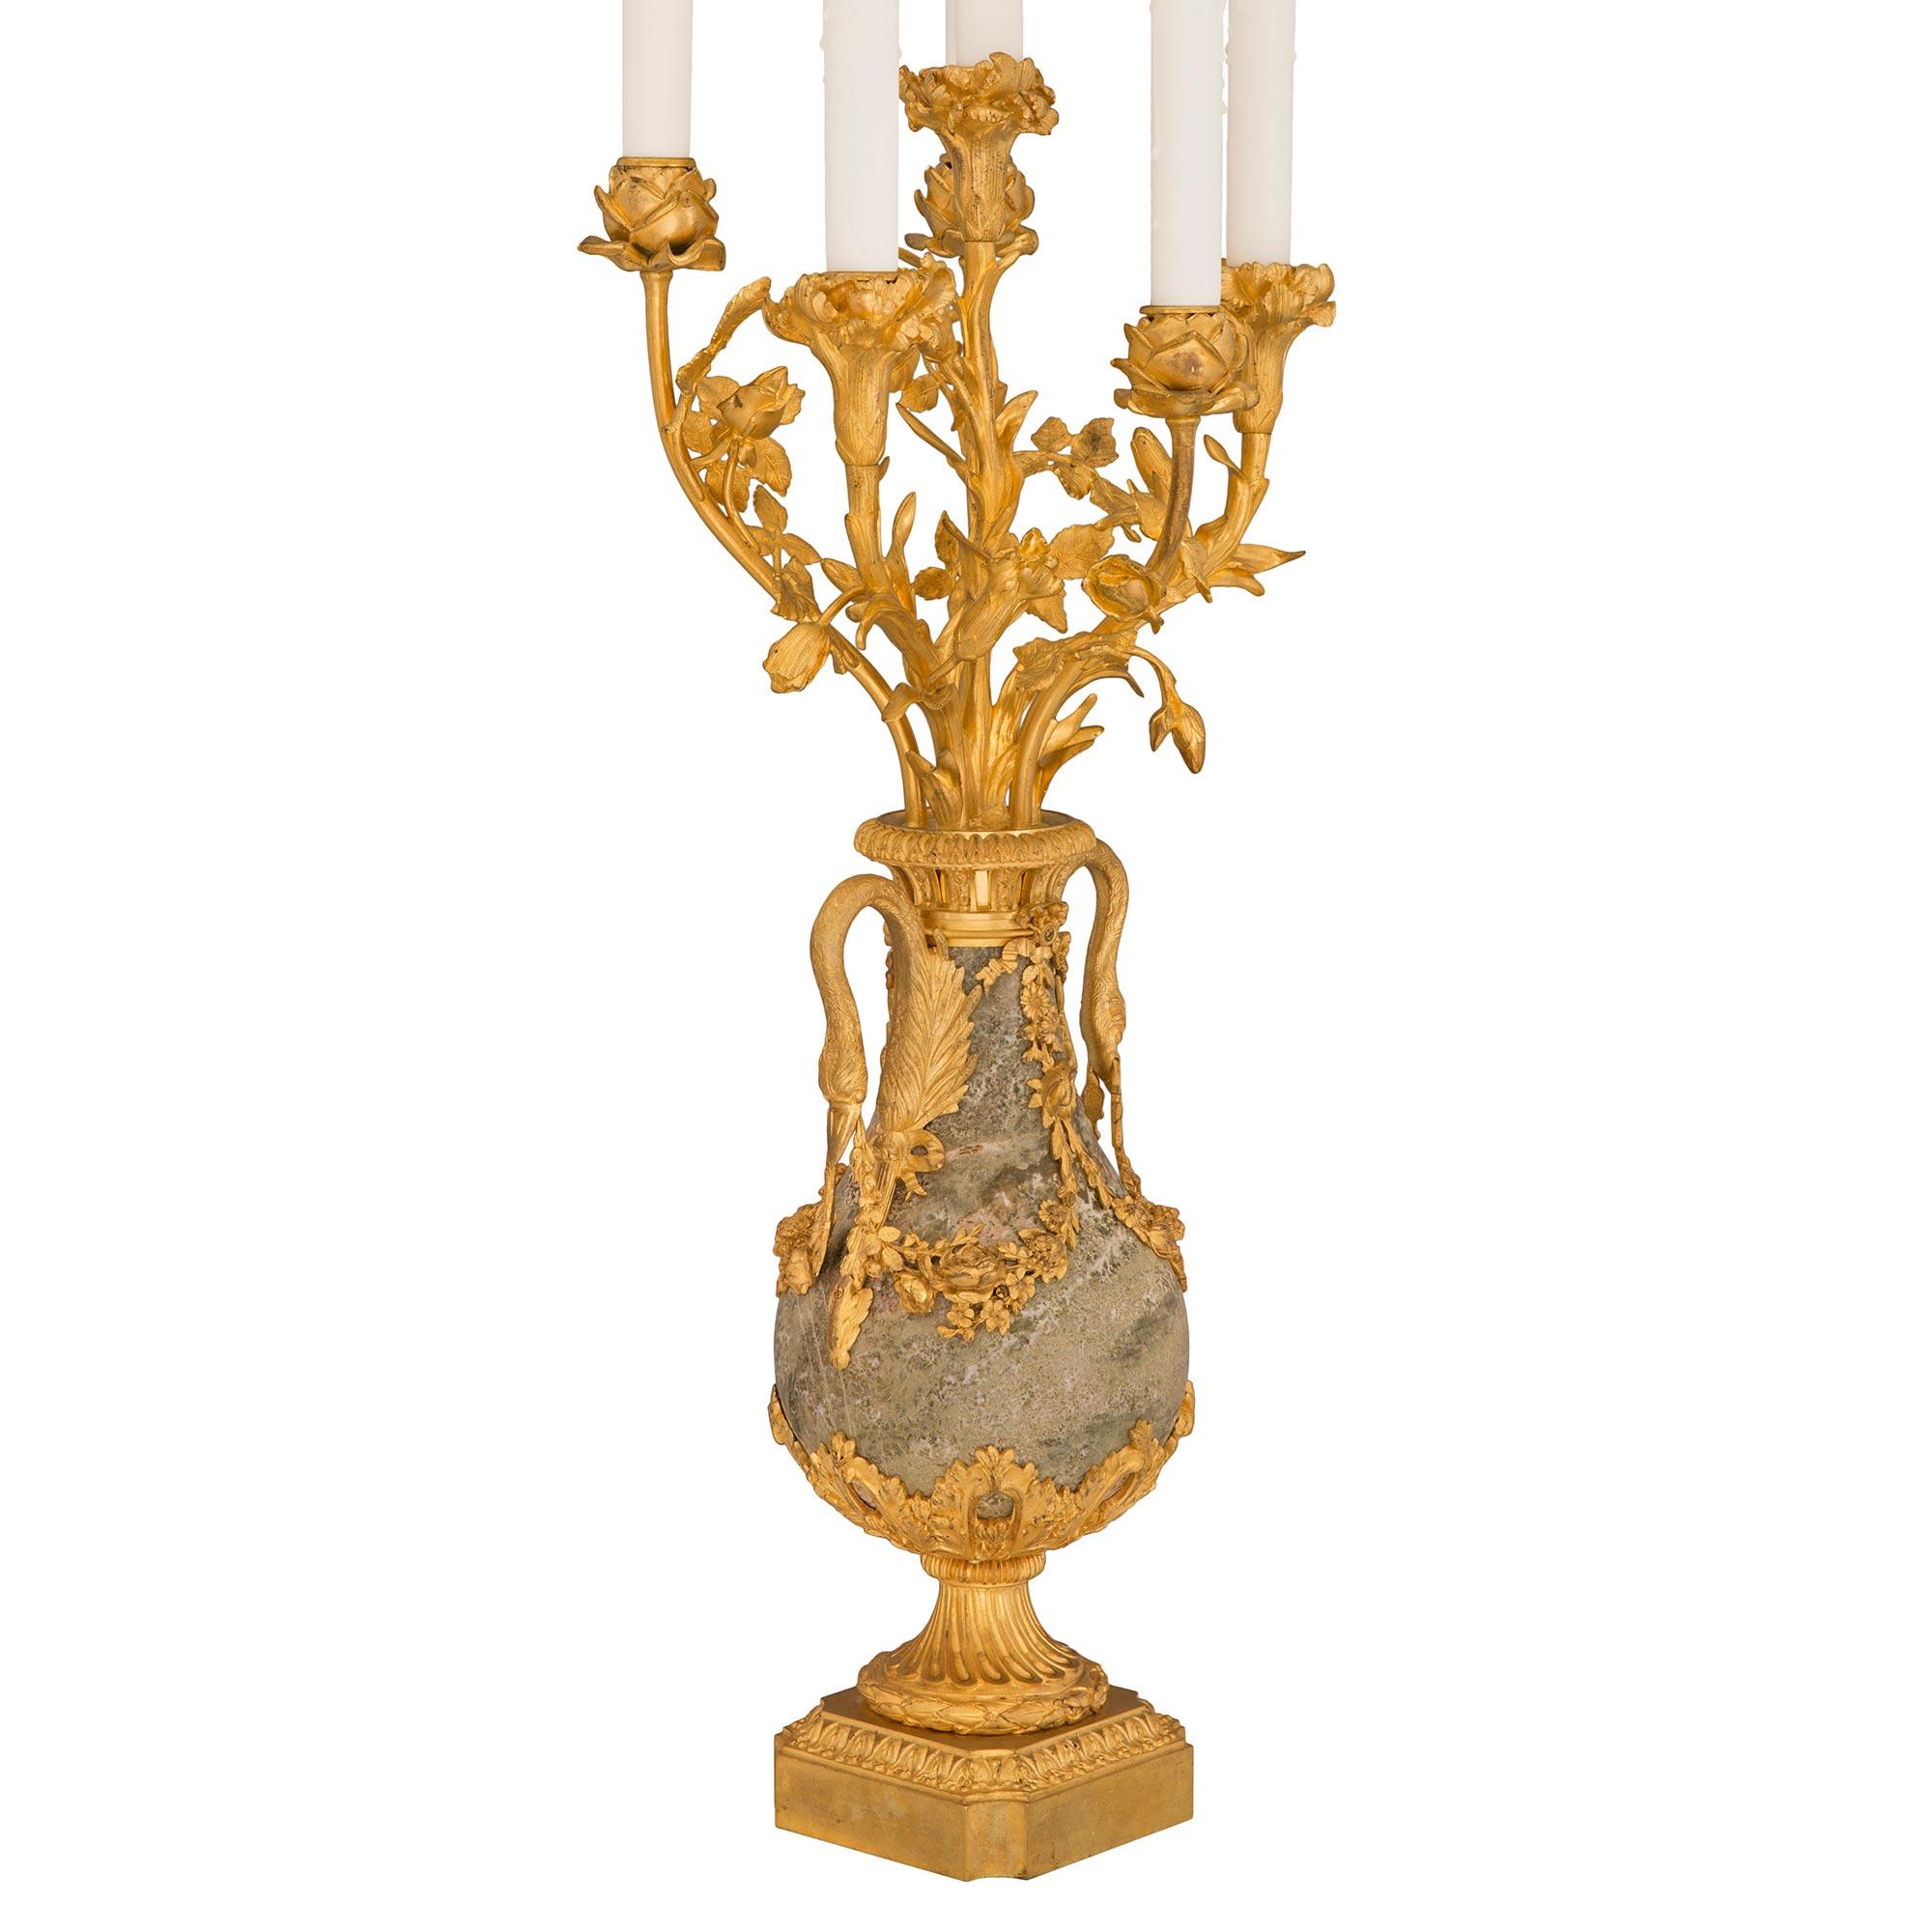 Une paire spectaculaire et de très haute qualité de lampes candélabres en marbre Sarrancolin et bronze doré de style Louis XVI du 19ème siècle. Chaque lampe à six bras est surélevée par une élégante base carrée avec des coins concaves et une bande